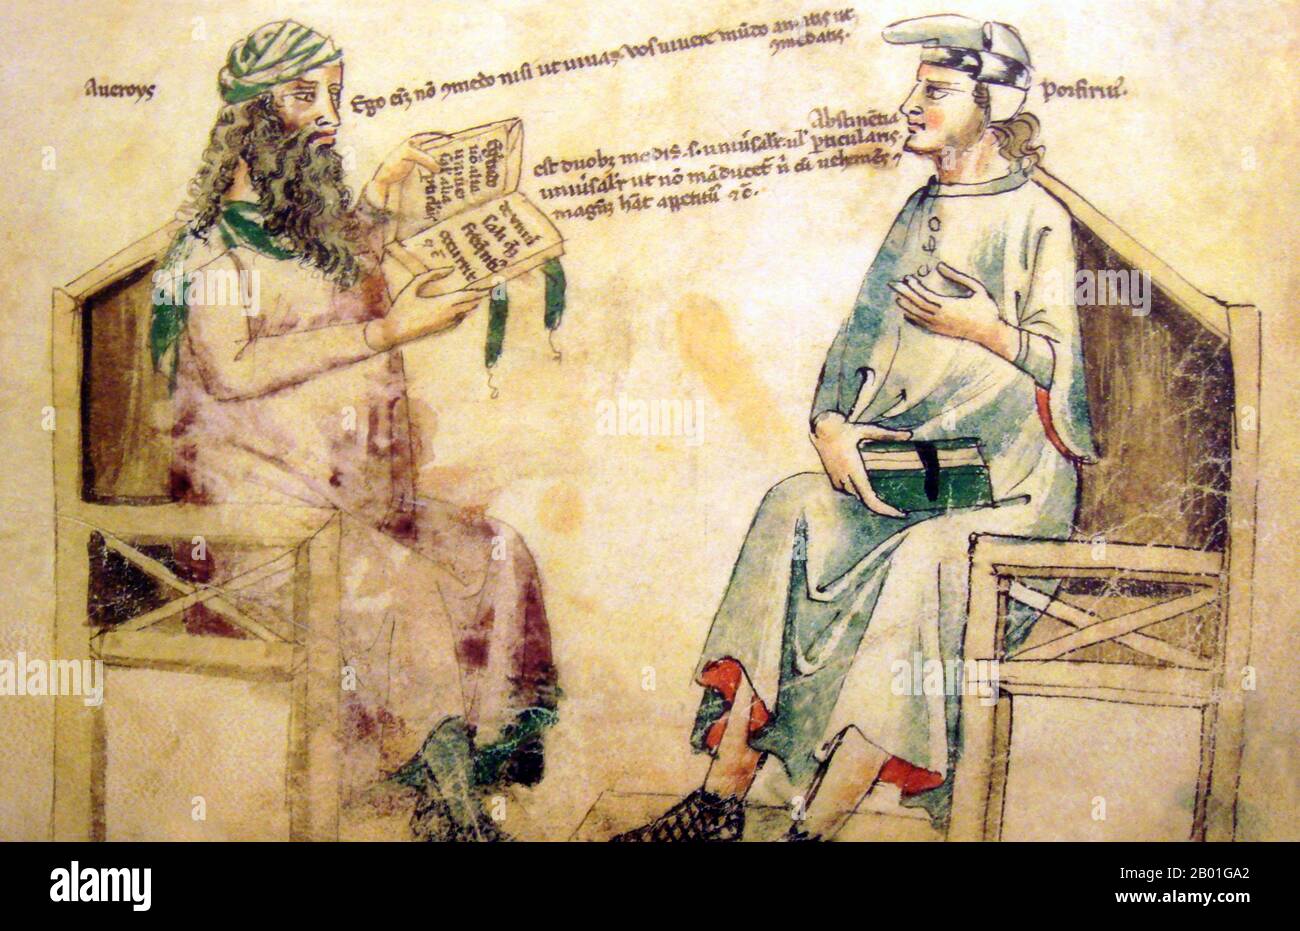 España/Al-Andalus: Debate imaginario entre Ibn Rushd (Averroes) y Porfirio de Tiro. Monfredo de Monte Imperiali Liber de Herbis, siglo 14th. Abū l-Walīd Muḥammad bin ʾAḥmad bin Rušd, más conocido como Ibn Rushd, y en la literatura europea como Averroes (1126 - 10 de diciembre de 1198), fue un erudito musulmán; un maestro de la filosofía aristotélica, la filosofía islámica, la teología islámica, la ley y la jurisprudencia maliki, la lógica, la psicología, la política, la teoría de la música árabe, y la teoría musical. y las ciencias de la medicina, la astronomía, la geografía, las matemáticas, la física y la mecánica celestial. Foto de stock